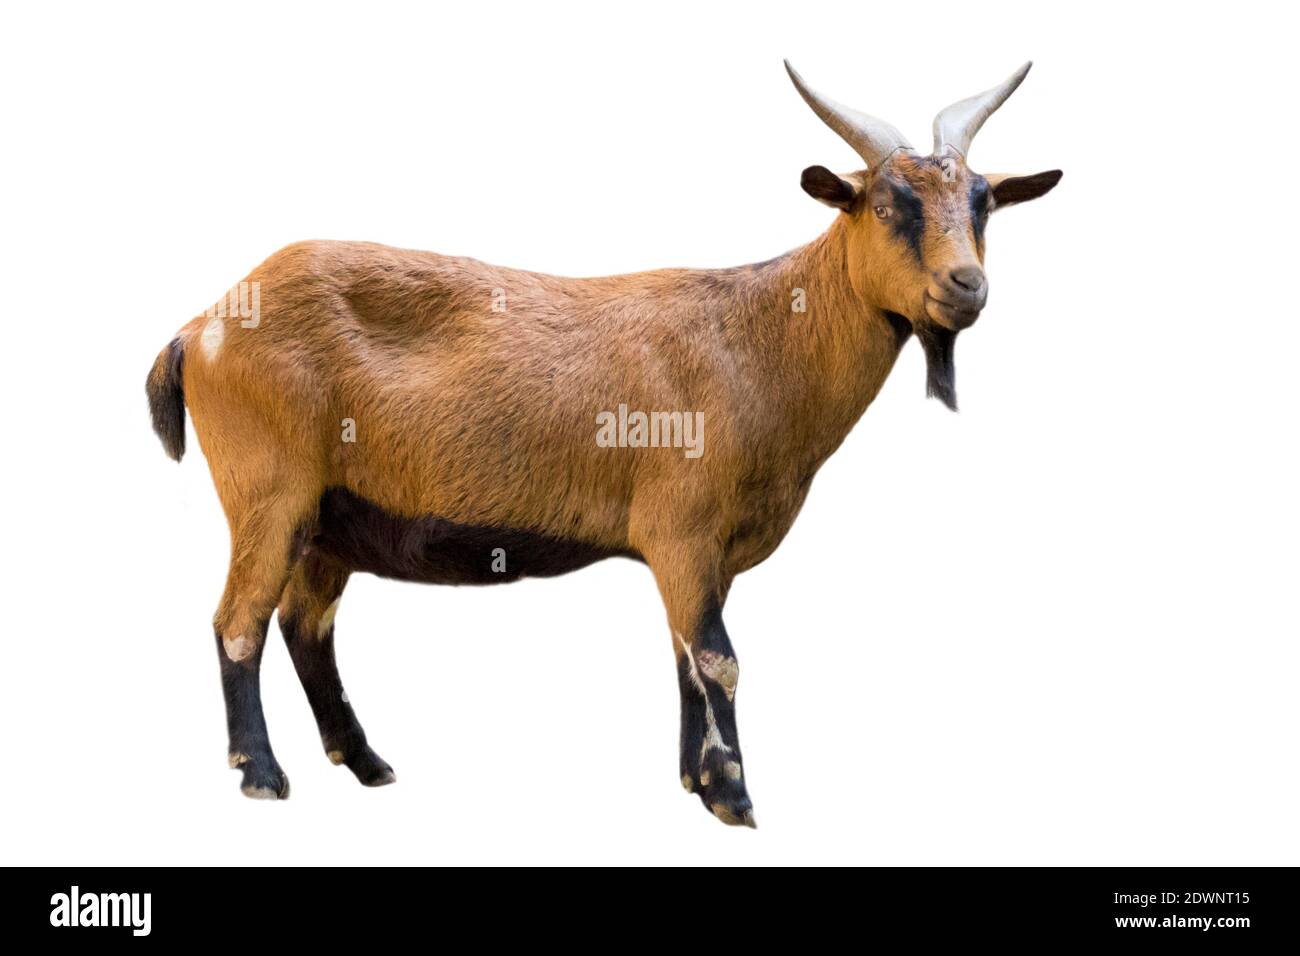 Image d'une chèvre brune sur fond blanc. Animaux de ferme. Banque D'Images